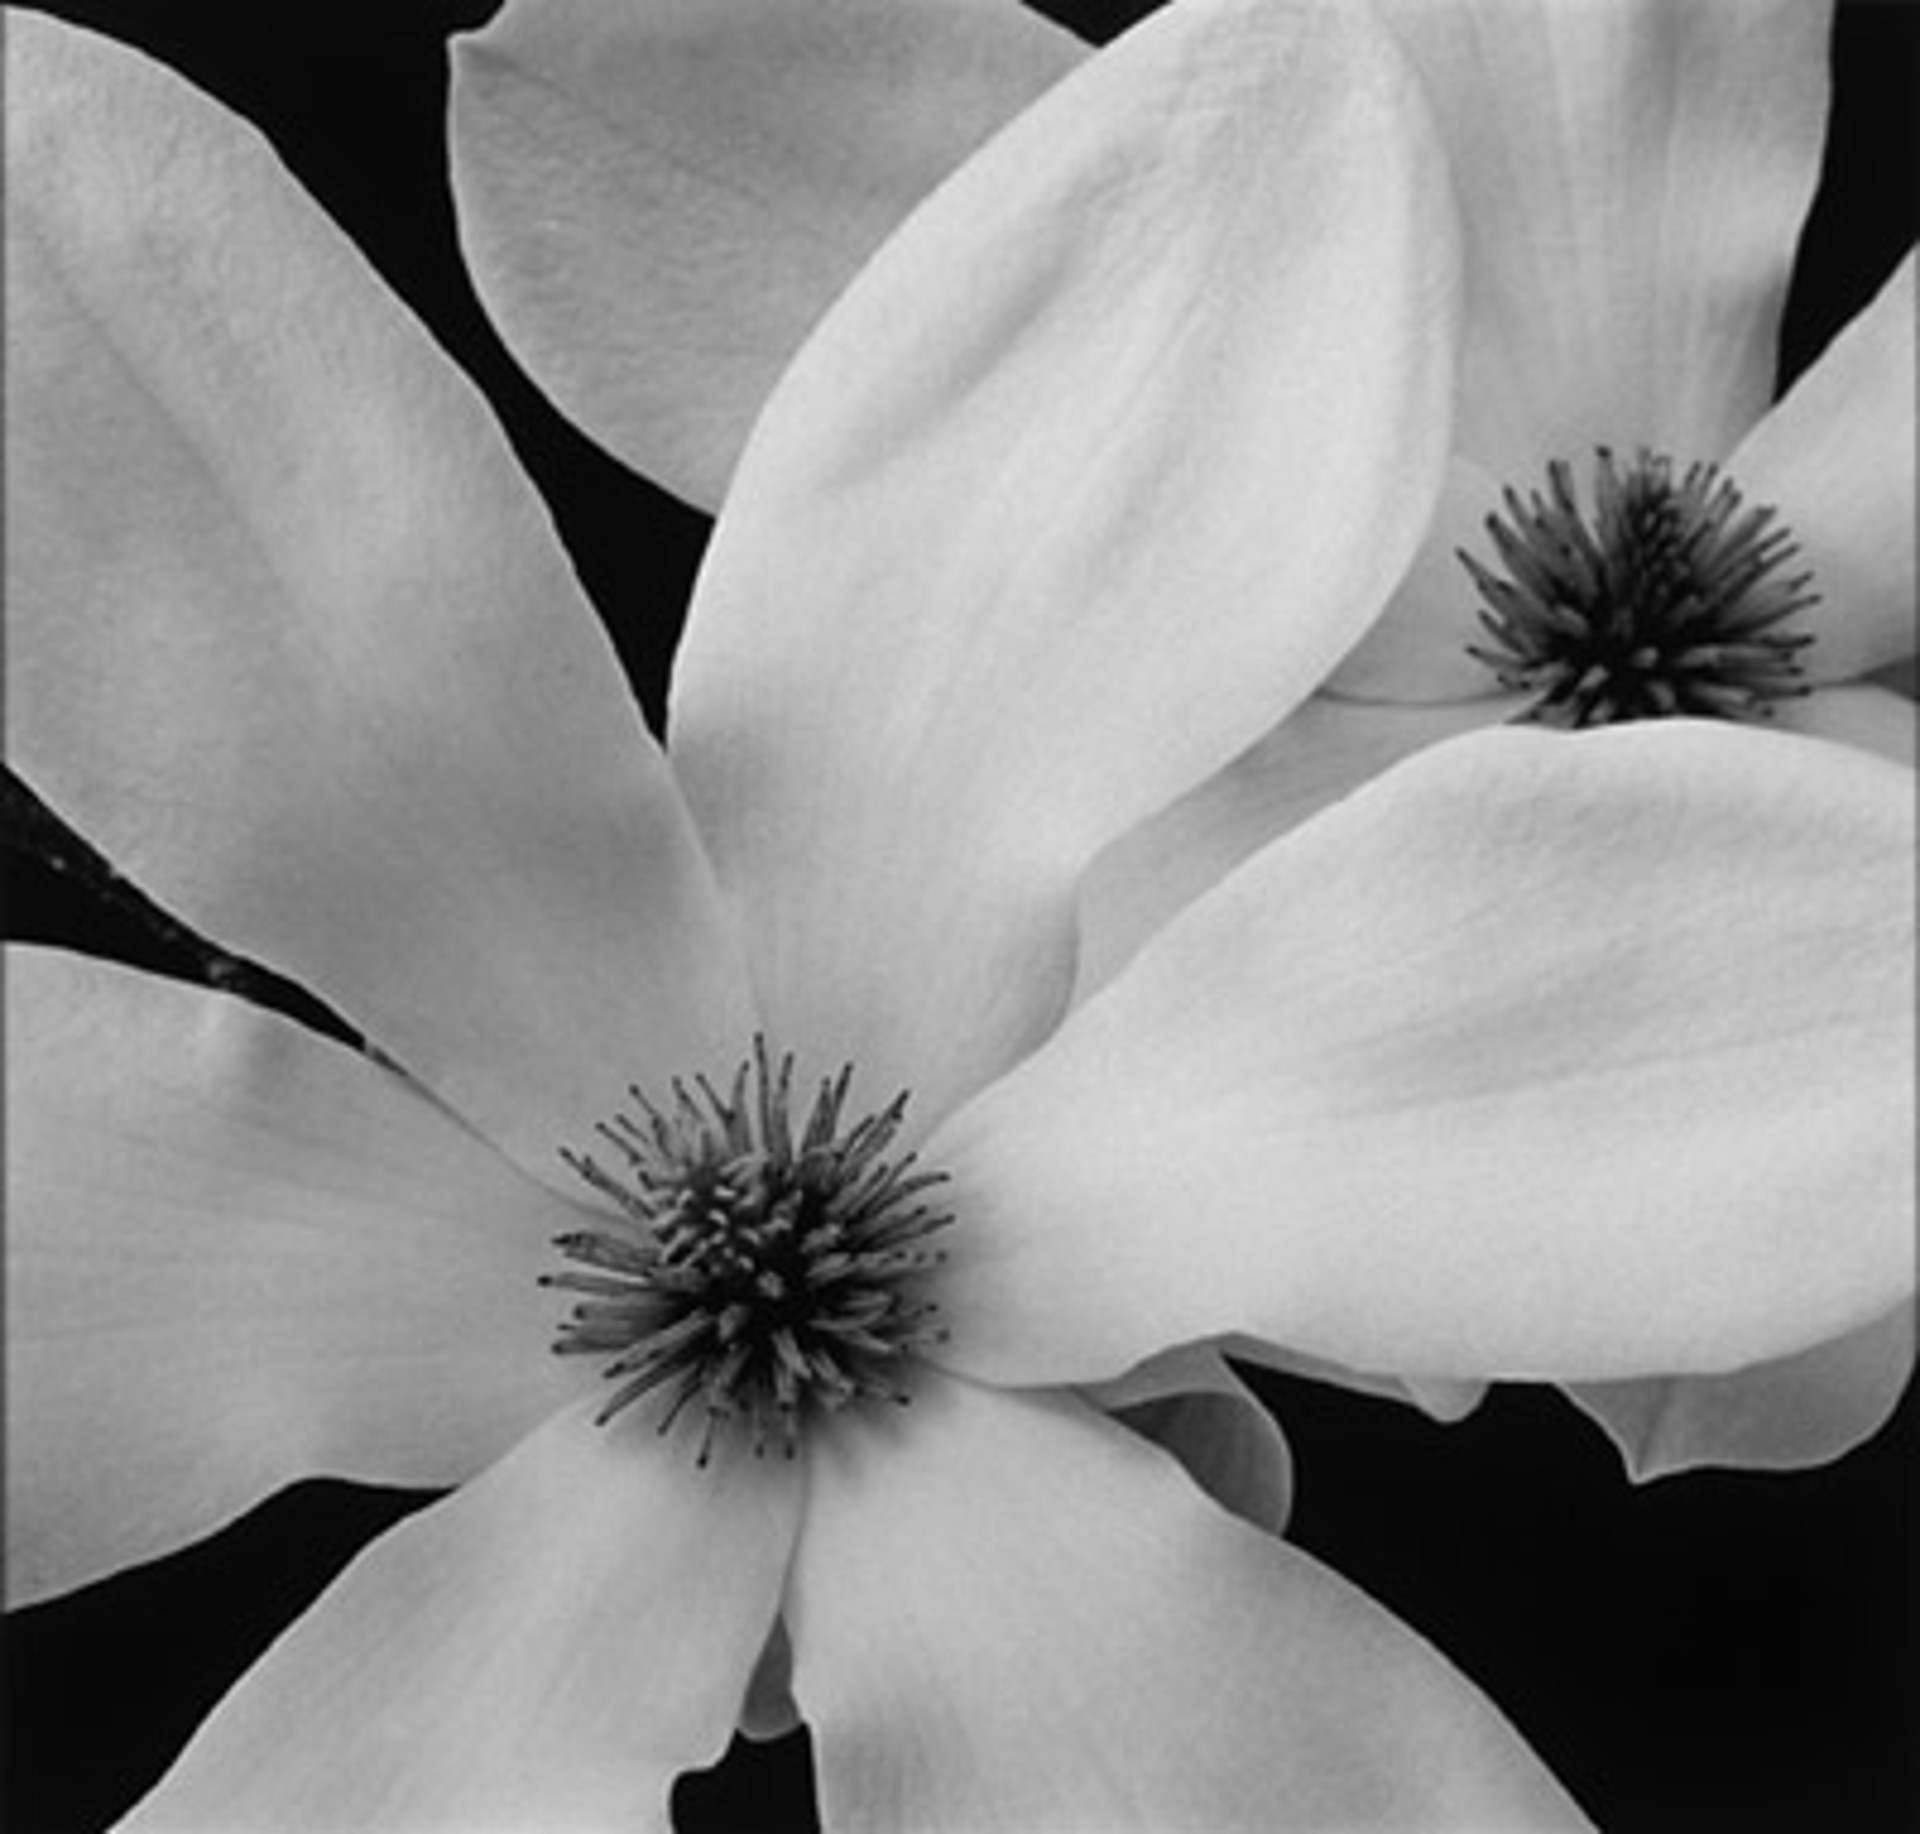 Two Magnolias by MaryAnn Bushweller